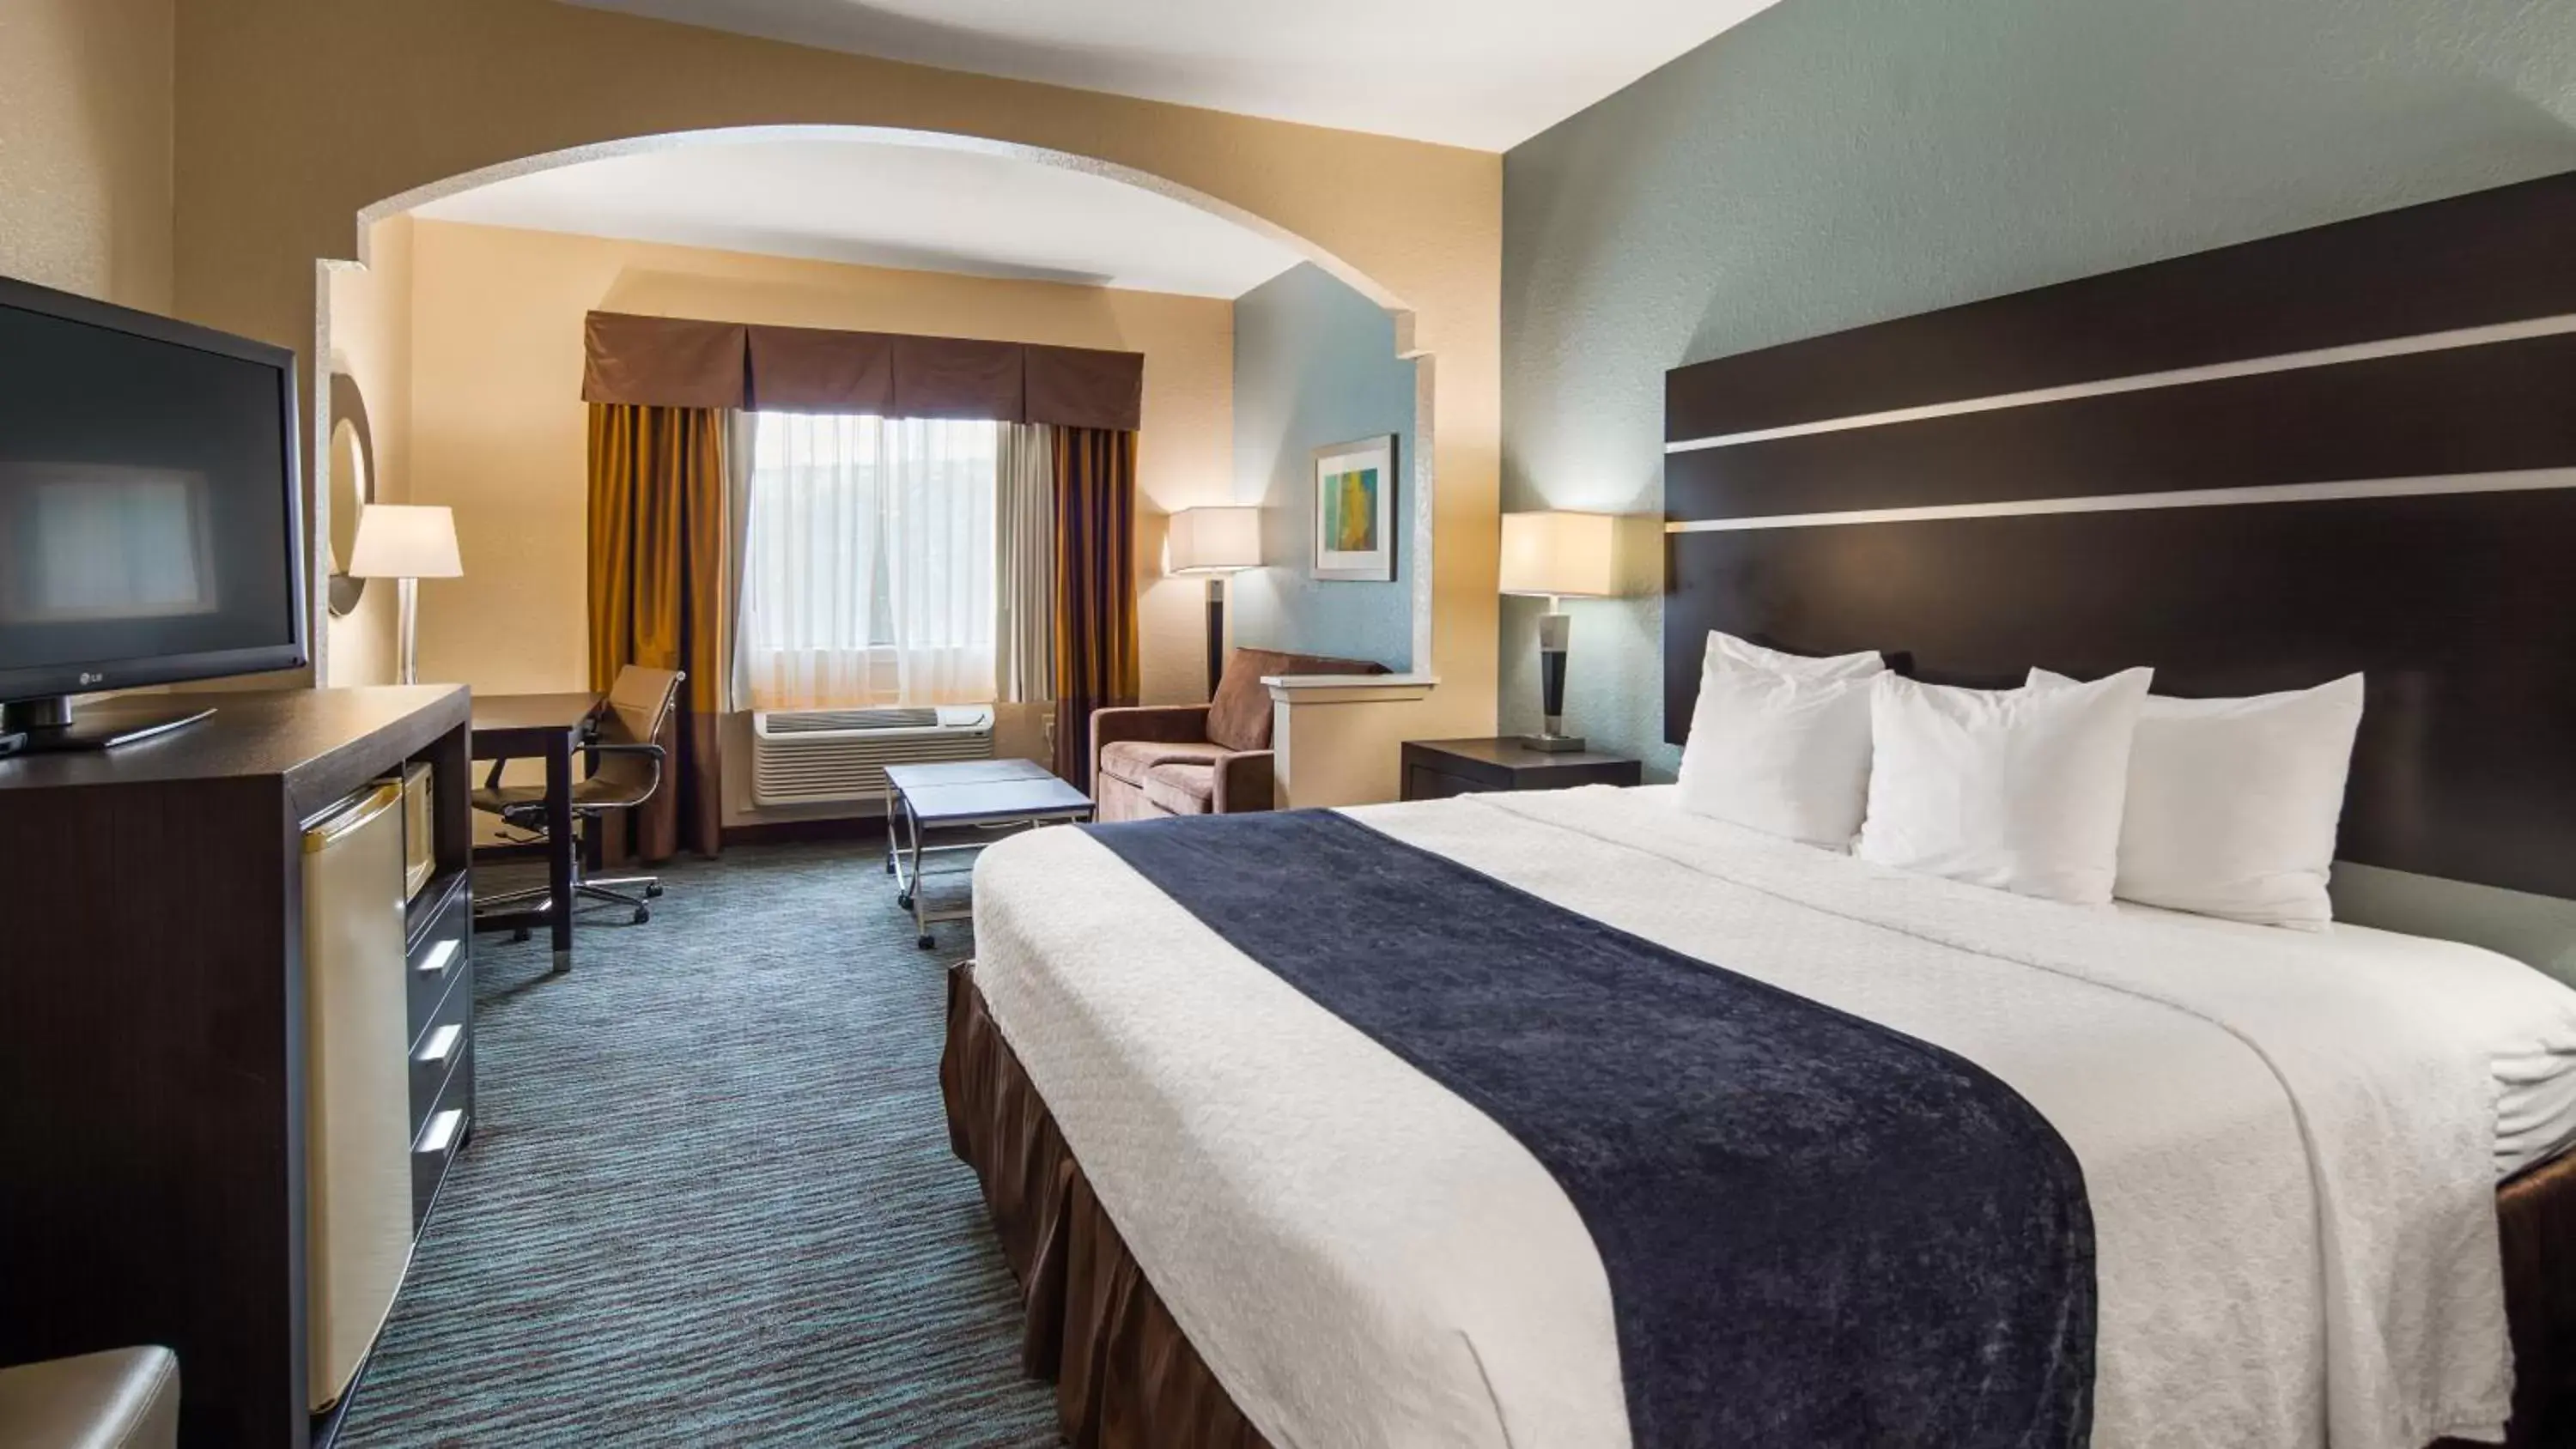 Bedroom in Best Western Plus Northwest Inn and Suites Houston